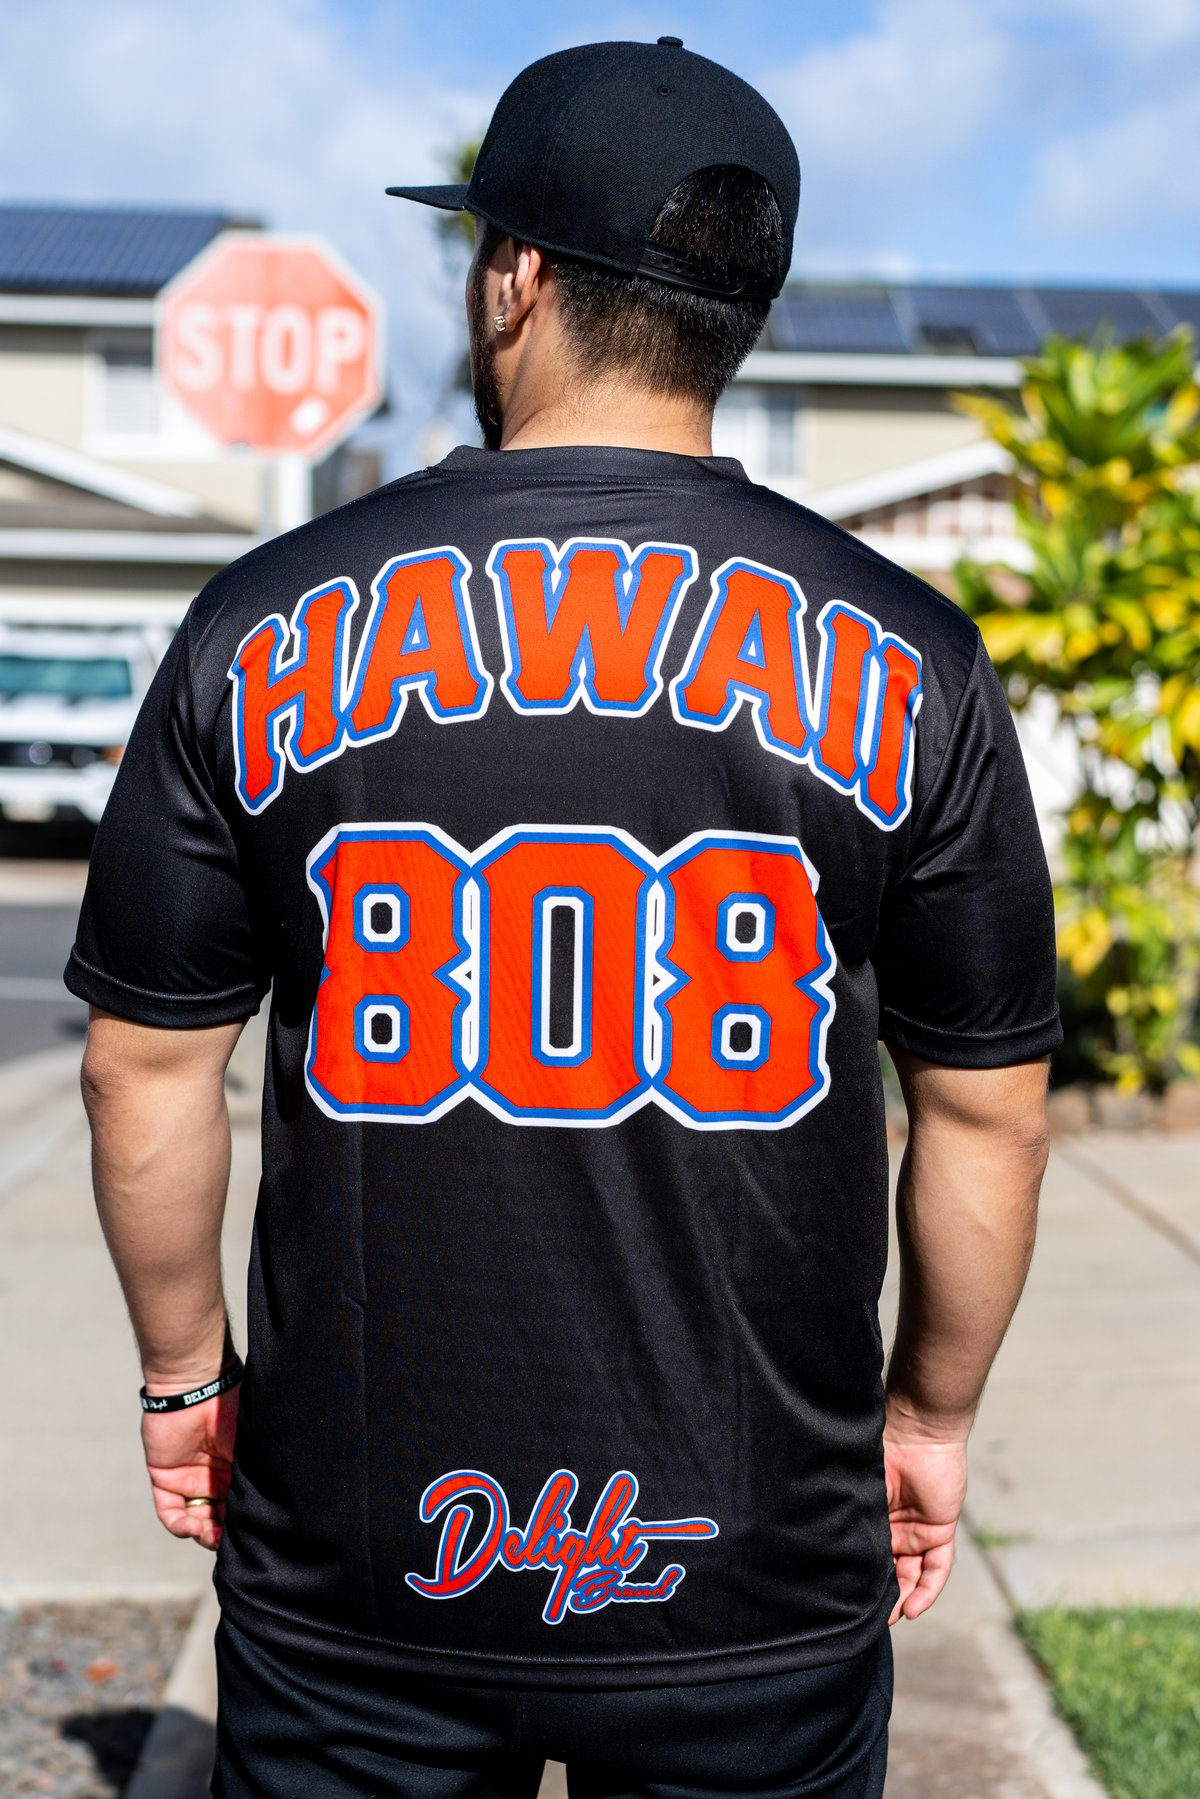 Delight 808 Hawaii 'MLB' Jersey